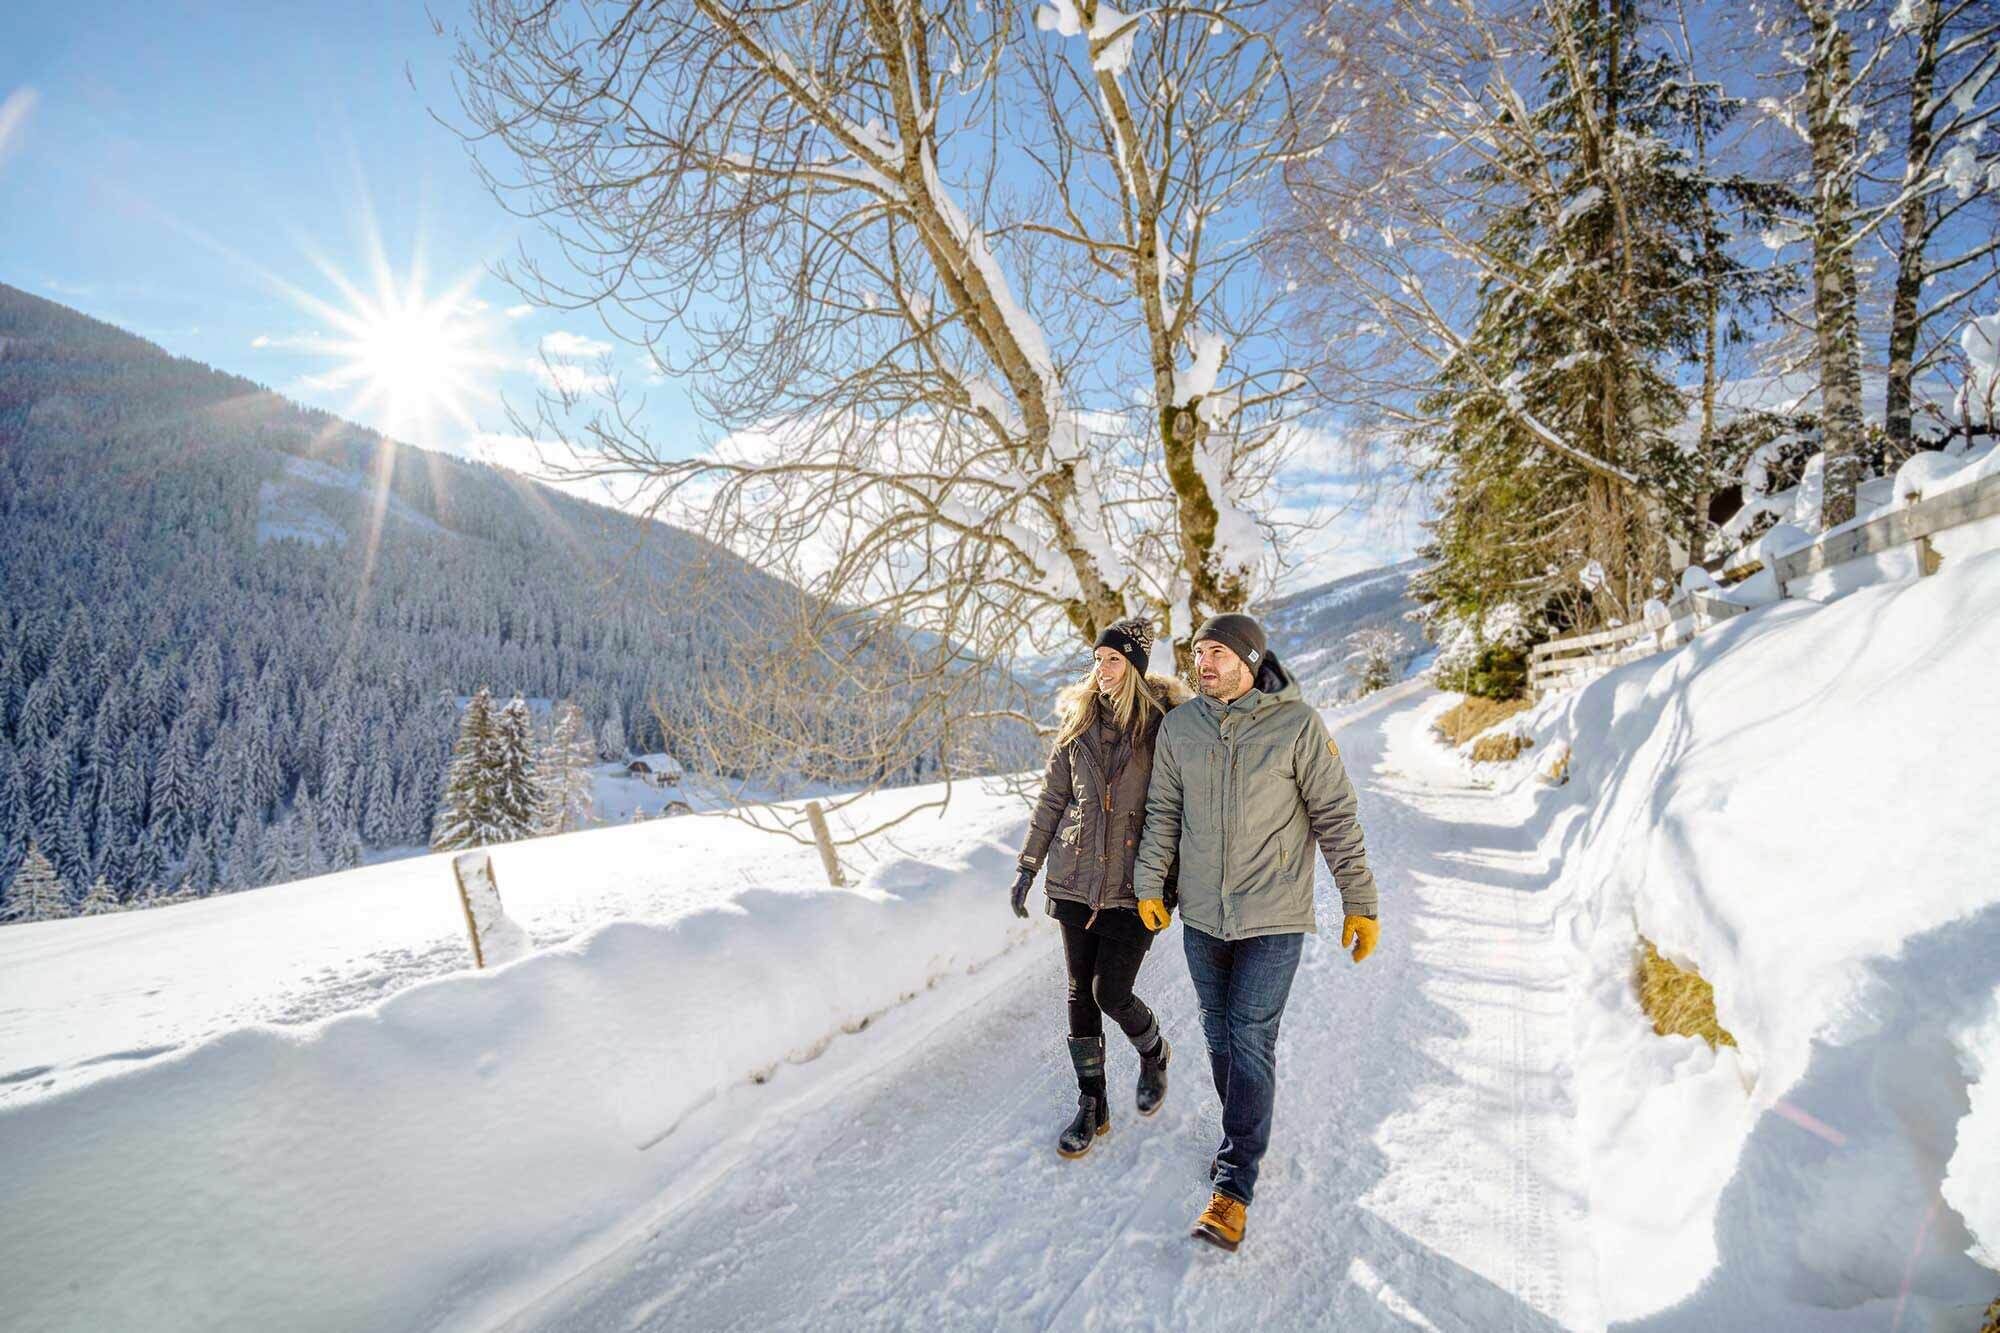 Una coppia che fa un'escursione invernale in mezzo alla neve nella natura.